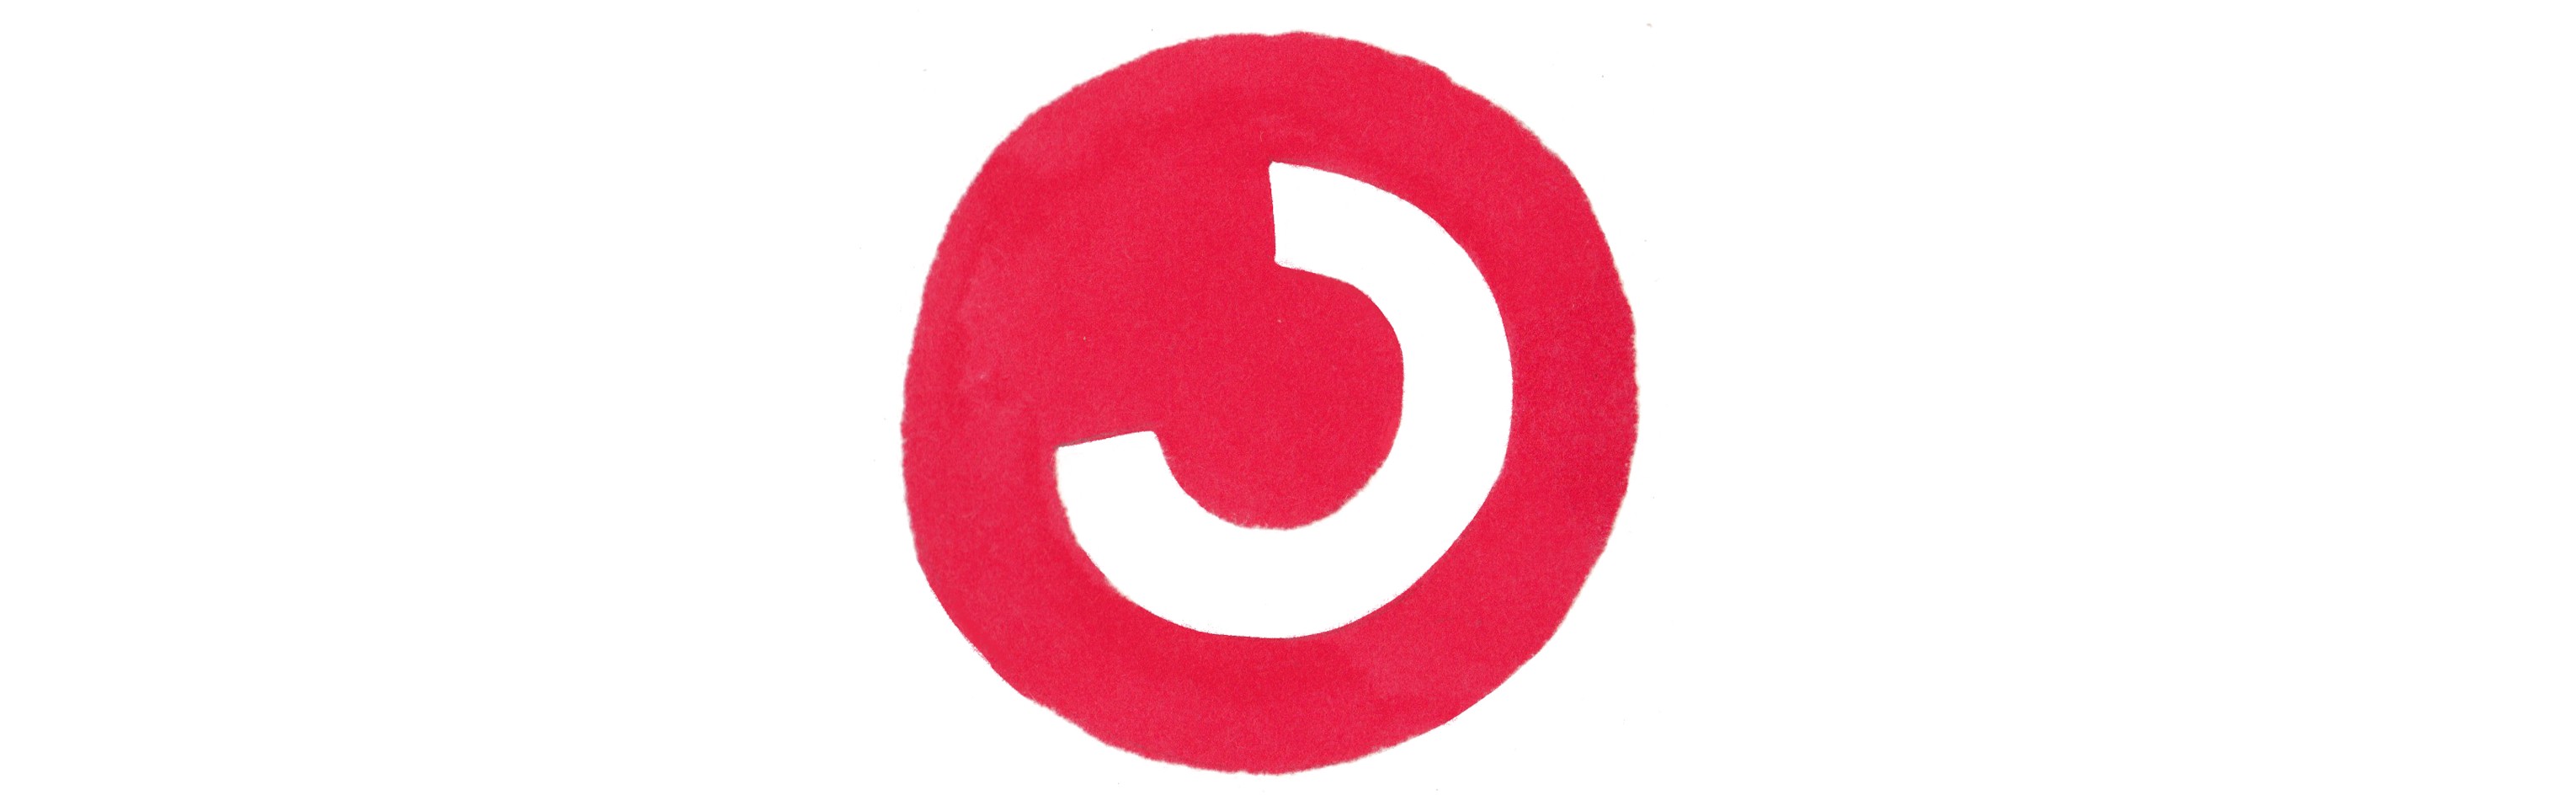 Cercanías logo